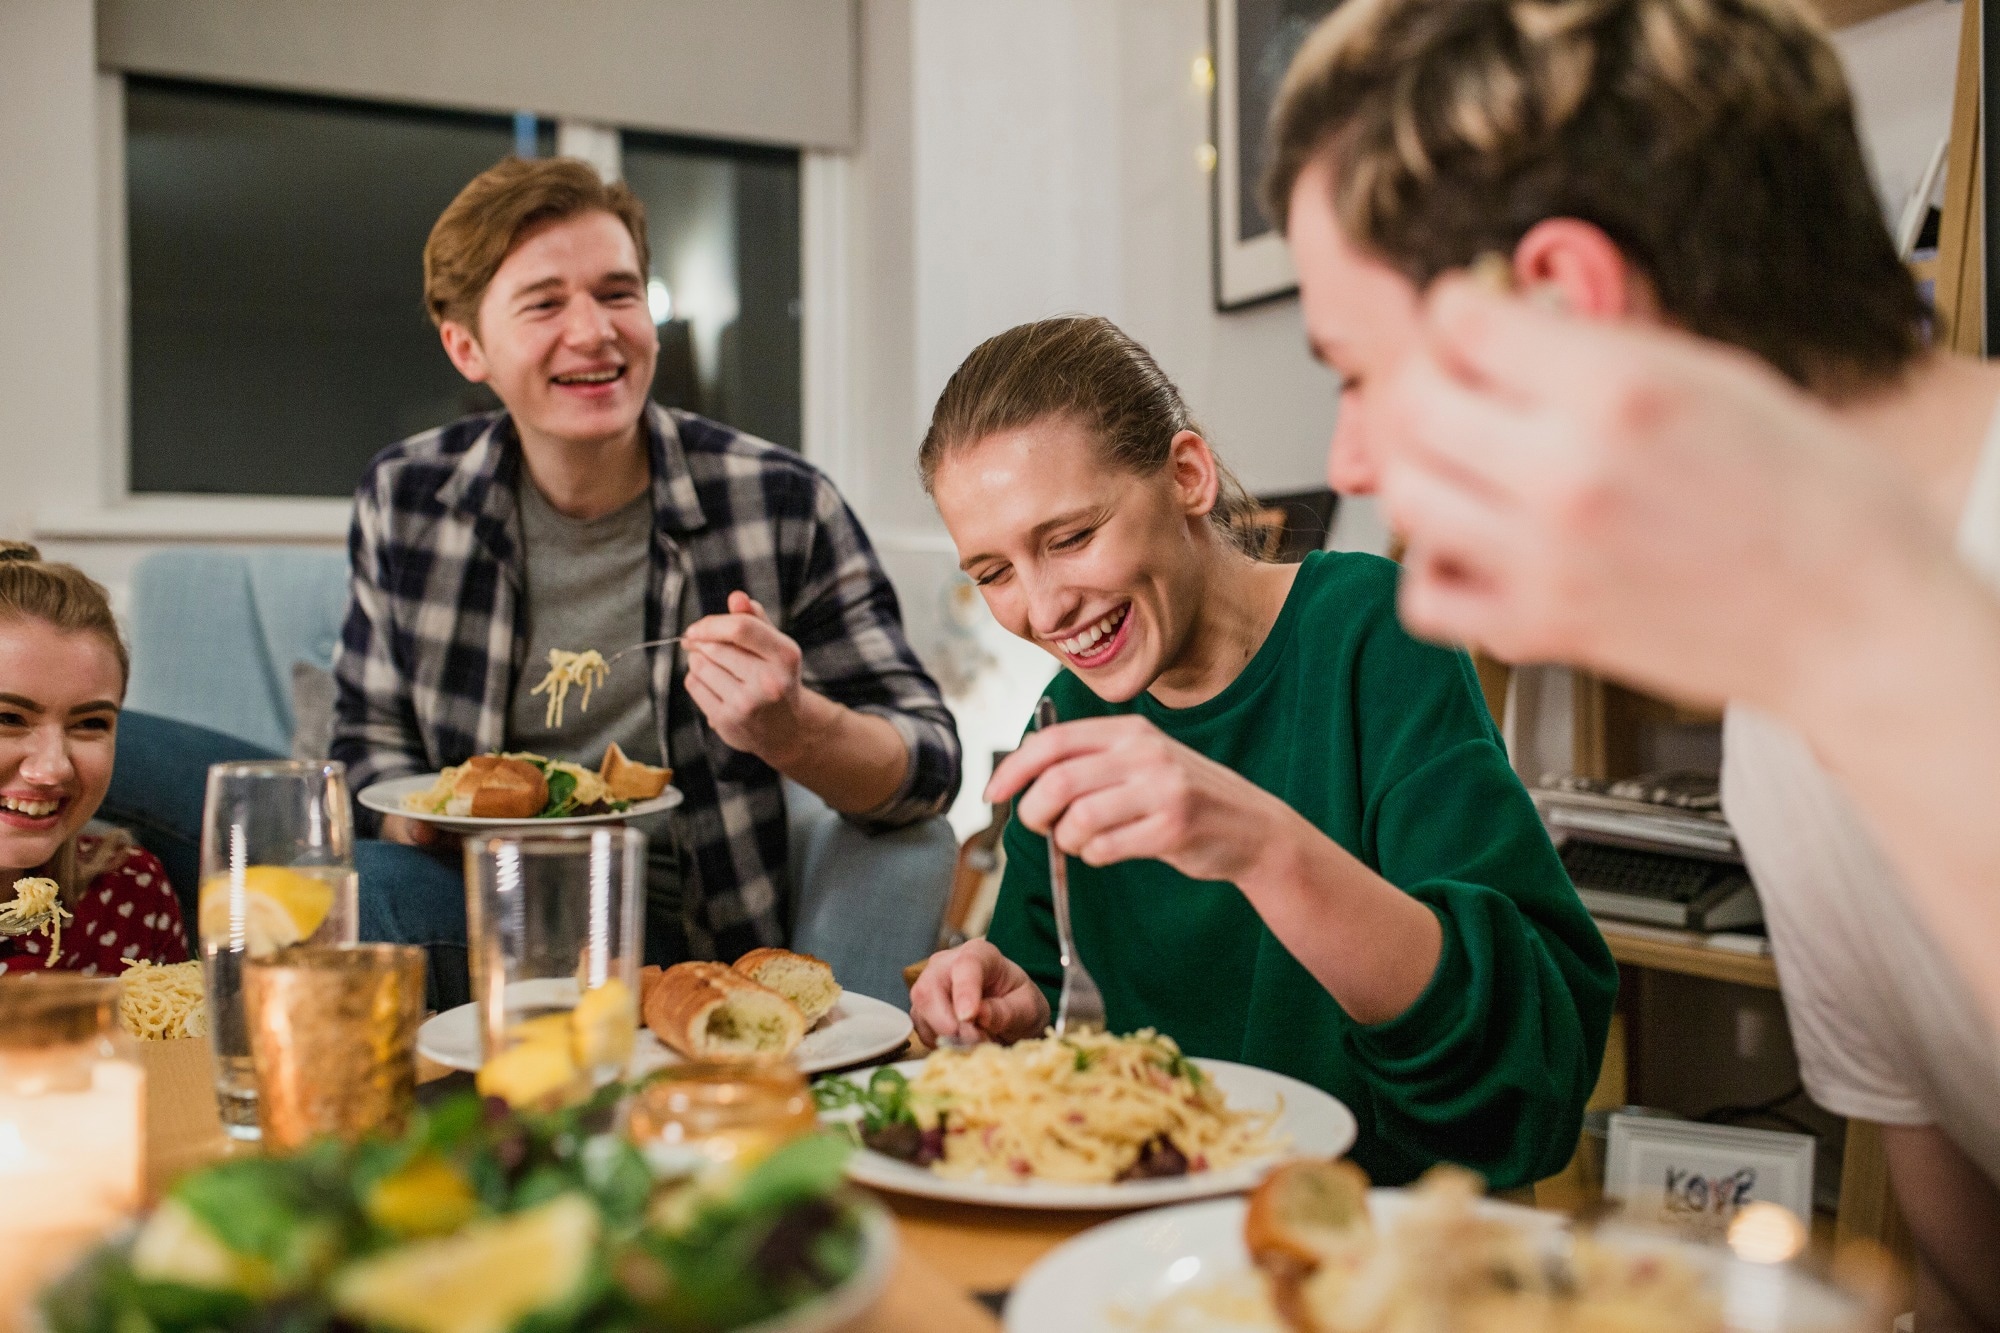 مطالعه: مهارت های کم آشپزی با اضافه وزن و چاقی در مقطع کارشناسی مرتبط است.  اعتبار تصویر: DGLimages/Shutterstock.com